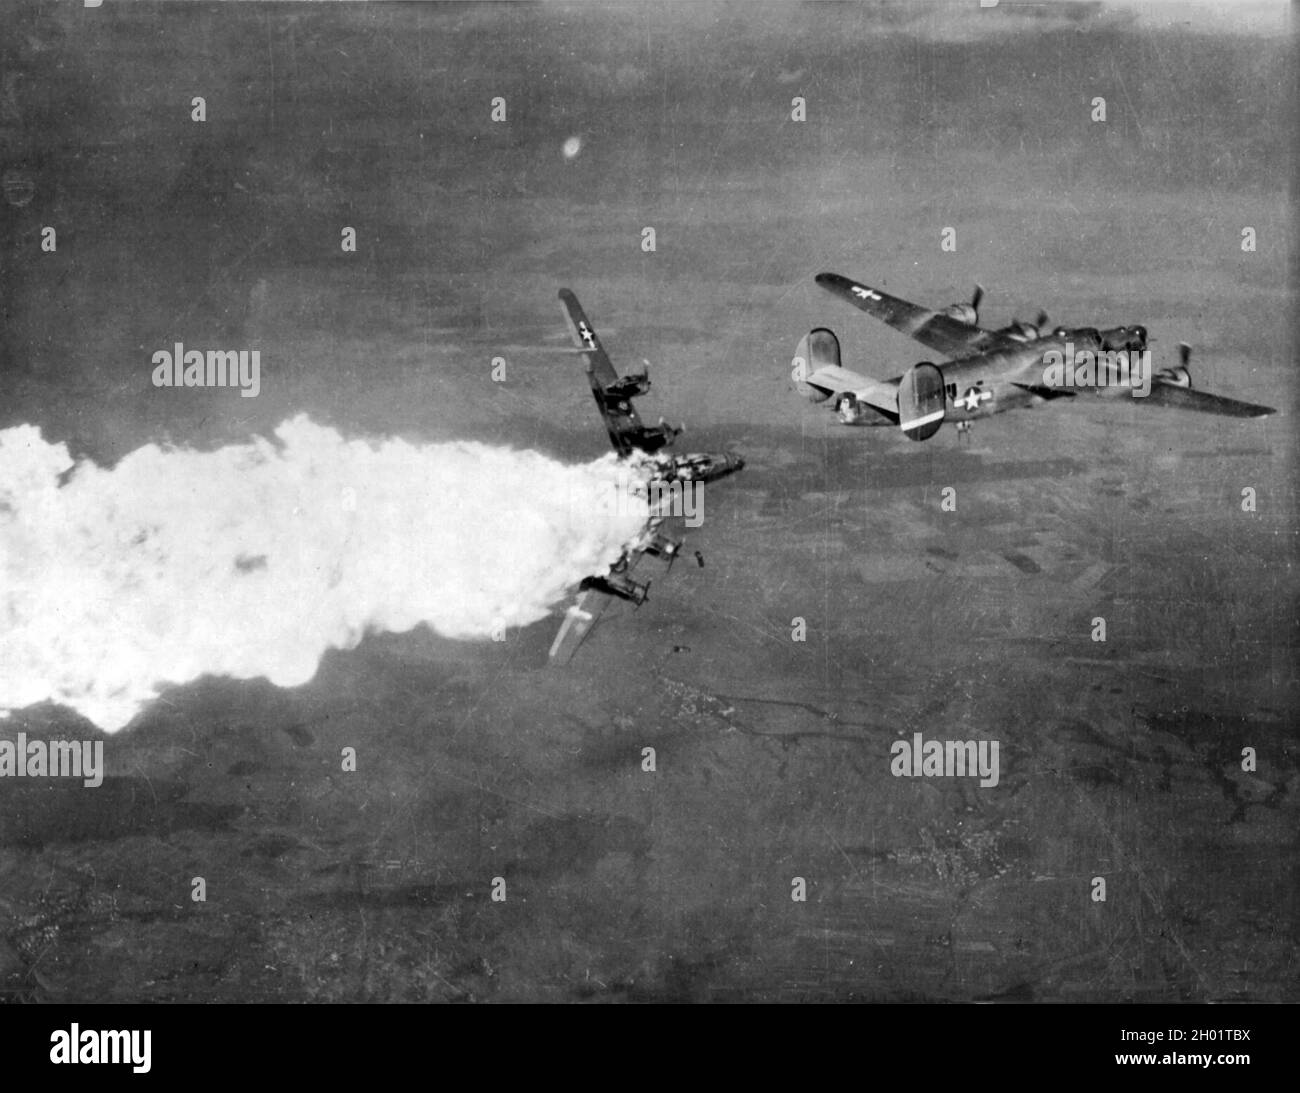 Un bombardiere liberatore consolidato B-24 esplode in fiamme durante un raid su un complesso chimico nella città di Blechhammer. Foto Stock